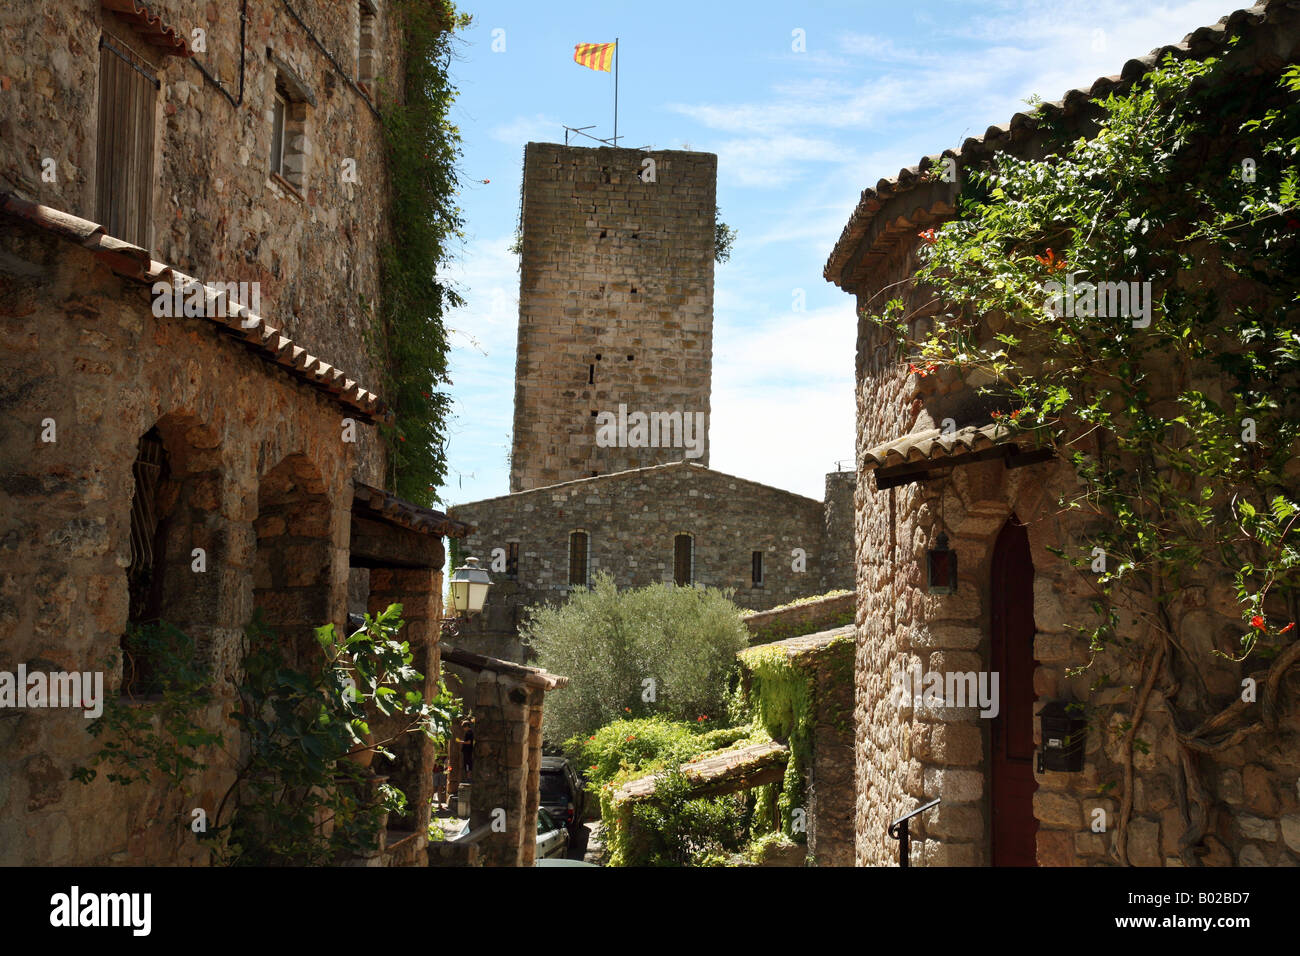 L'antico borgo medievale di Les Arcs con la torre centrale Saracena, Provenza, Francia Europa Foto Stock